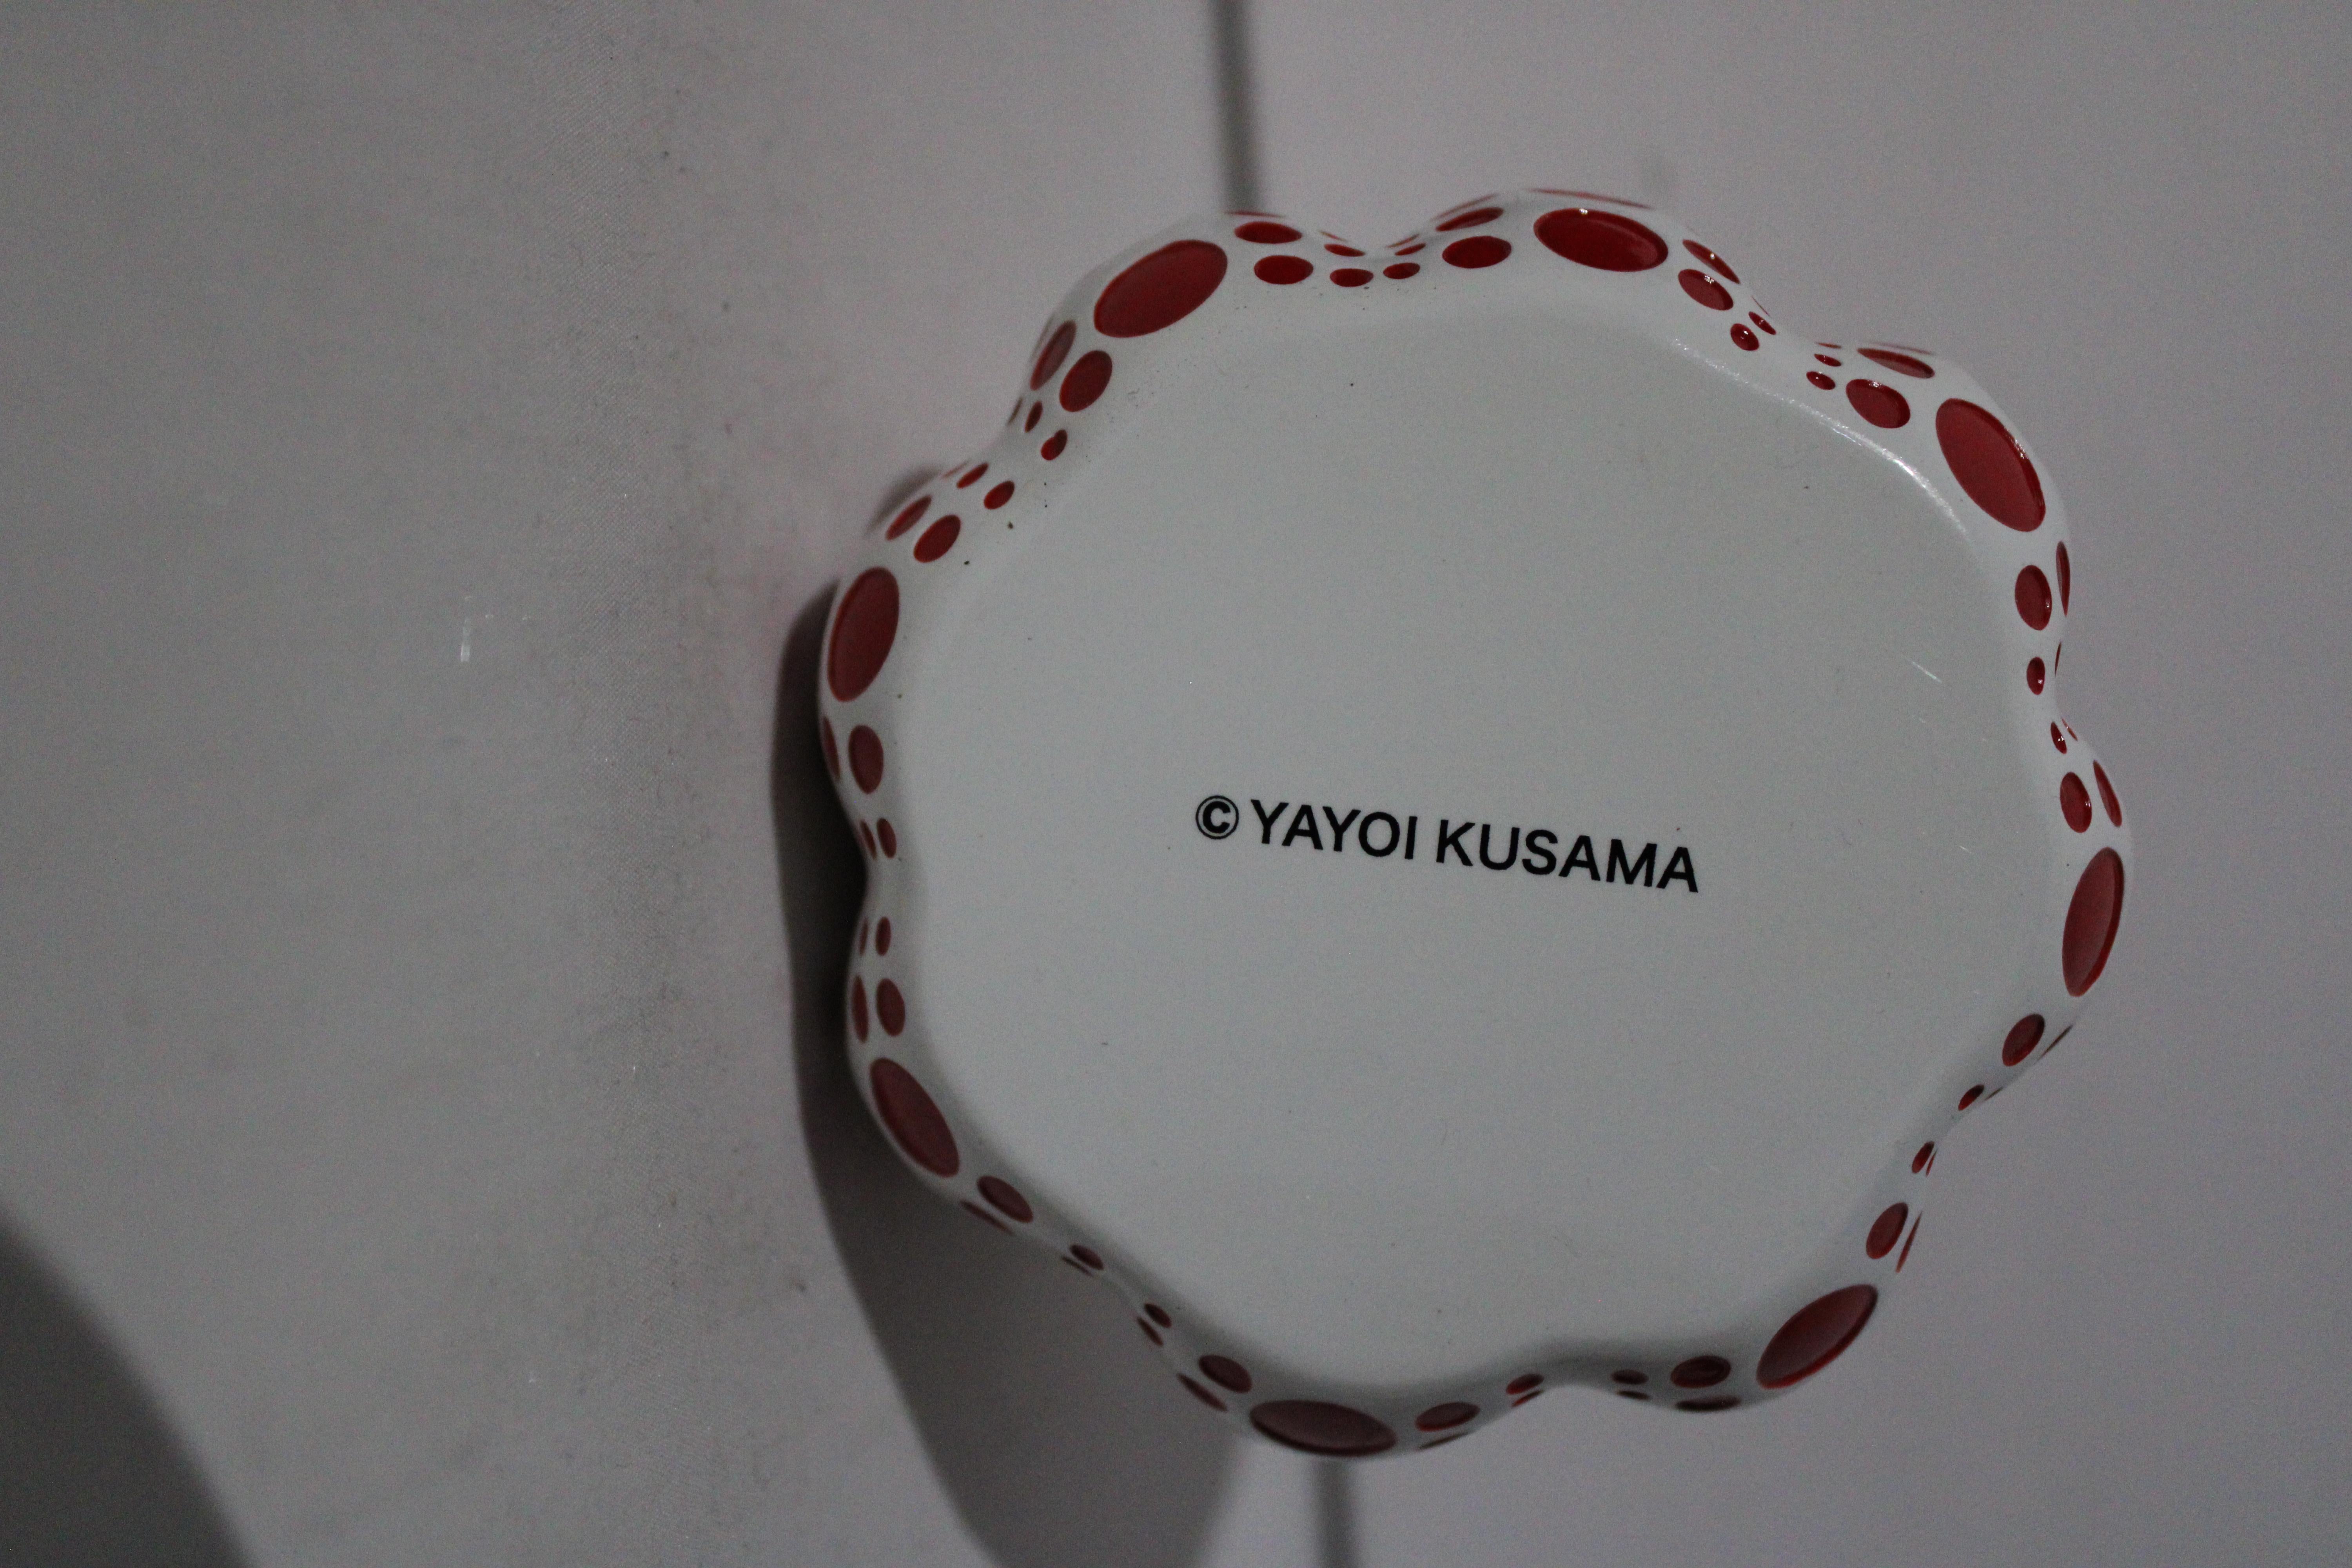 
Yayoi Kusama: Die international renommierte japanische Künstlerin Yayoi Kusama arbeitet in einer Vielzahl von Medien, von der Zeichnung, Malerei und Fotografie bis hin zur Installation und Performancekunst. Während ihrer 60-jährigen Karriere hat